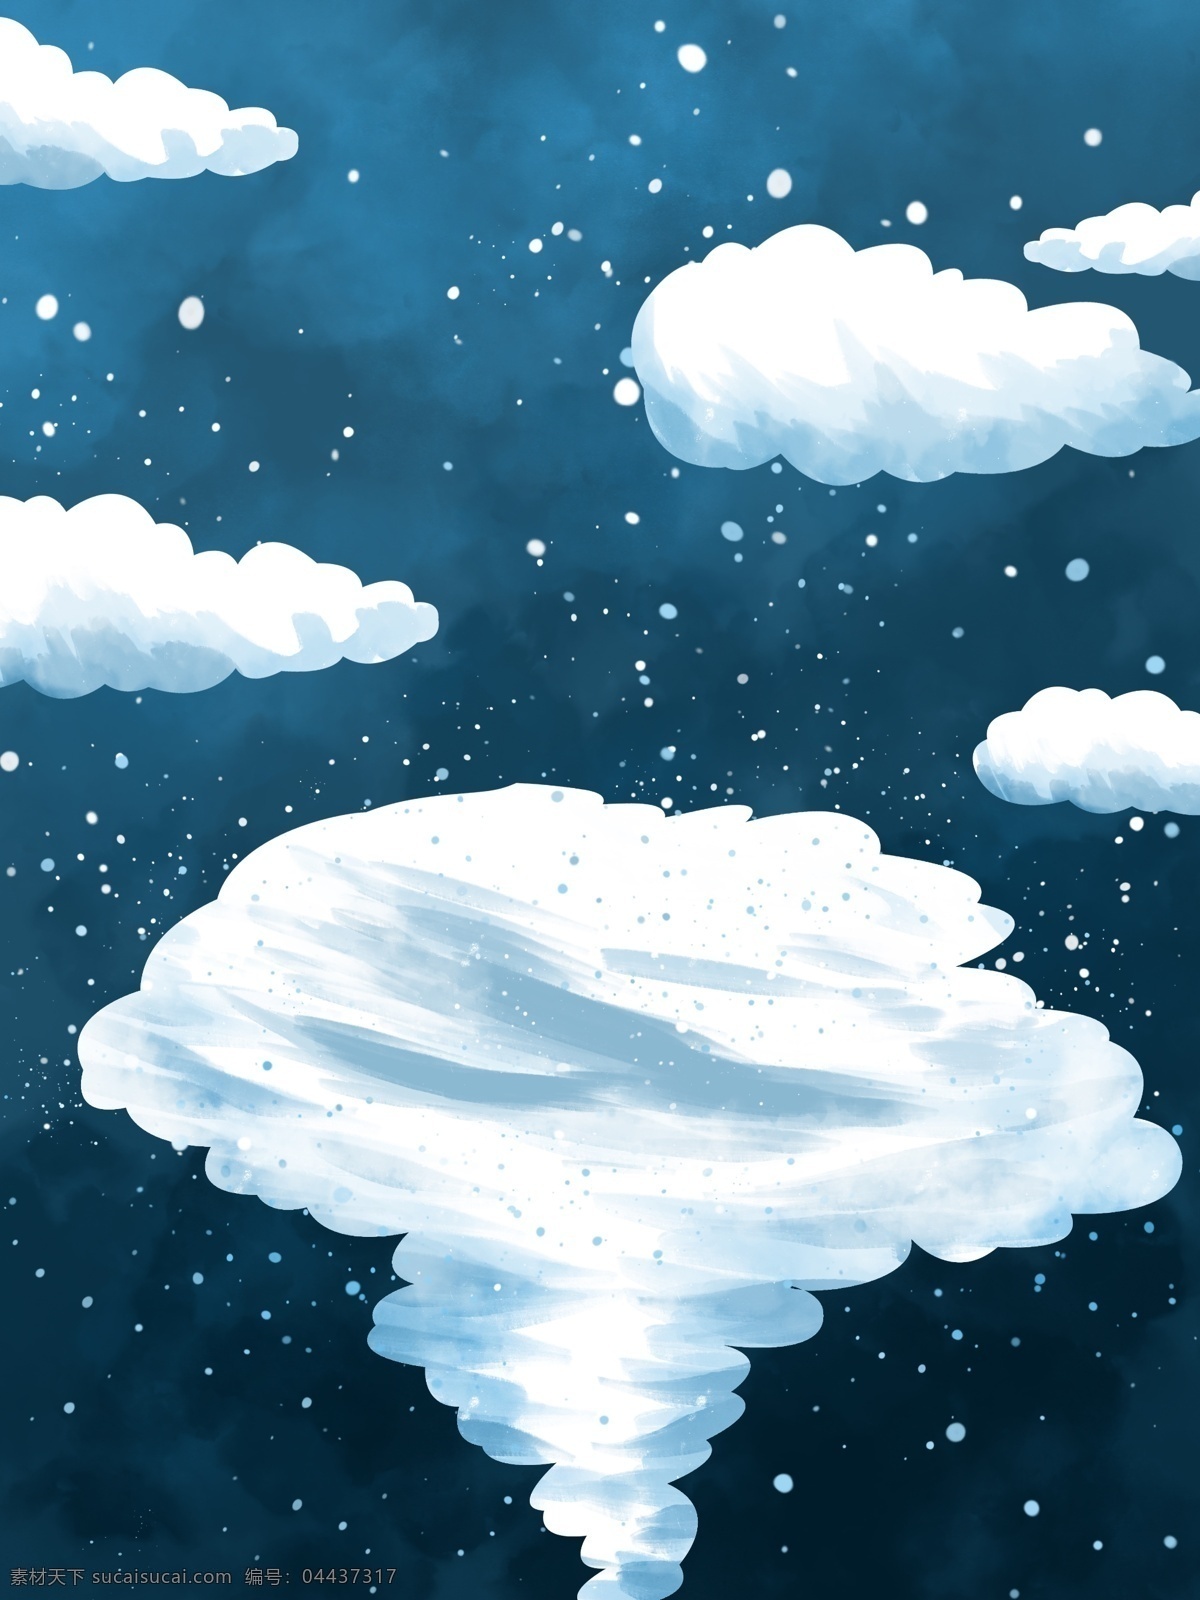 创意 手绘 白云 背景 蓝色 下雪 冬季主题 广告背景 背景设计 促销背景 背景展板图 背景图